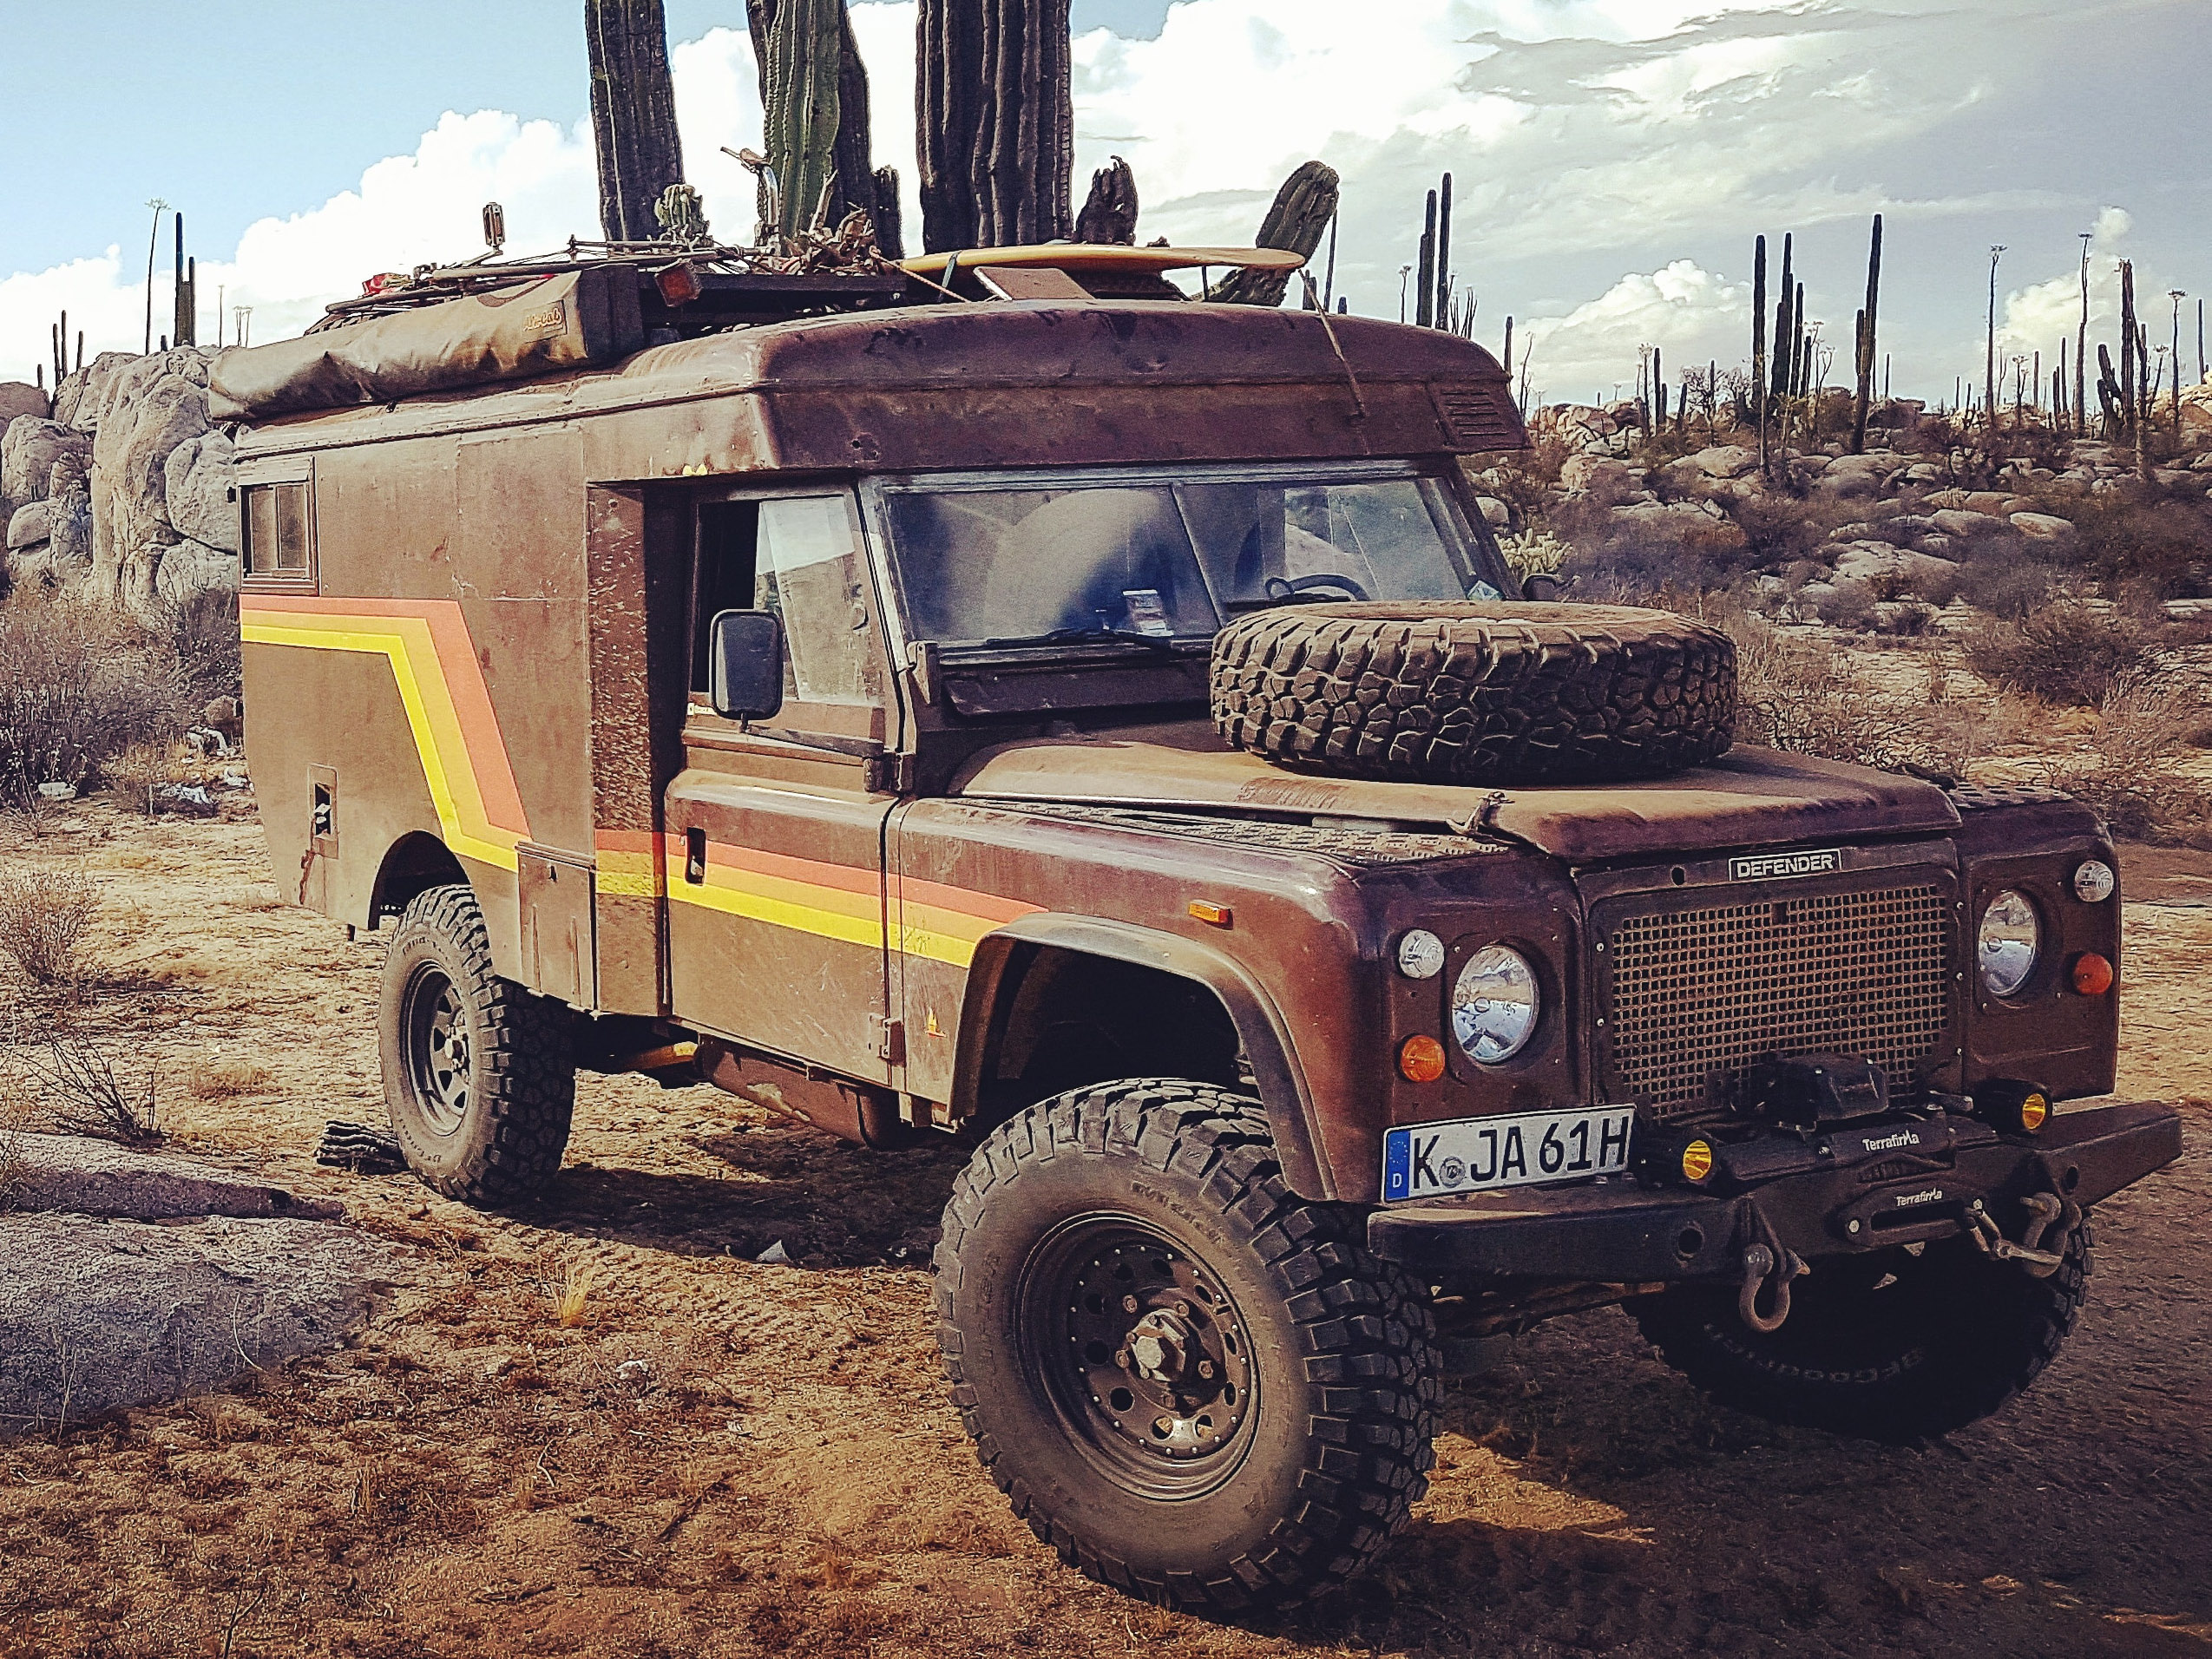 Vintage Land Rover overland camper parked in the desert